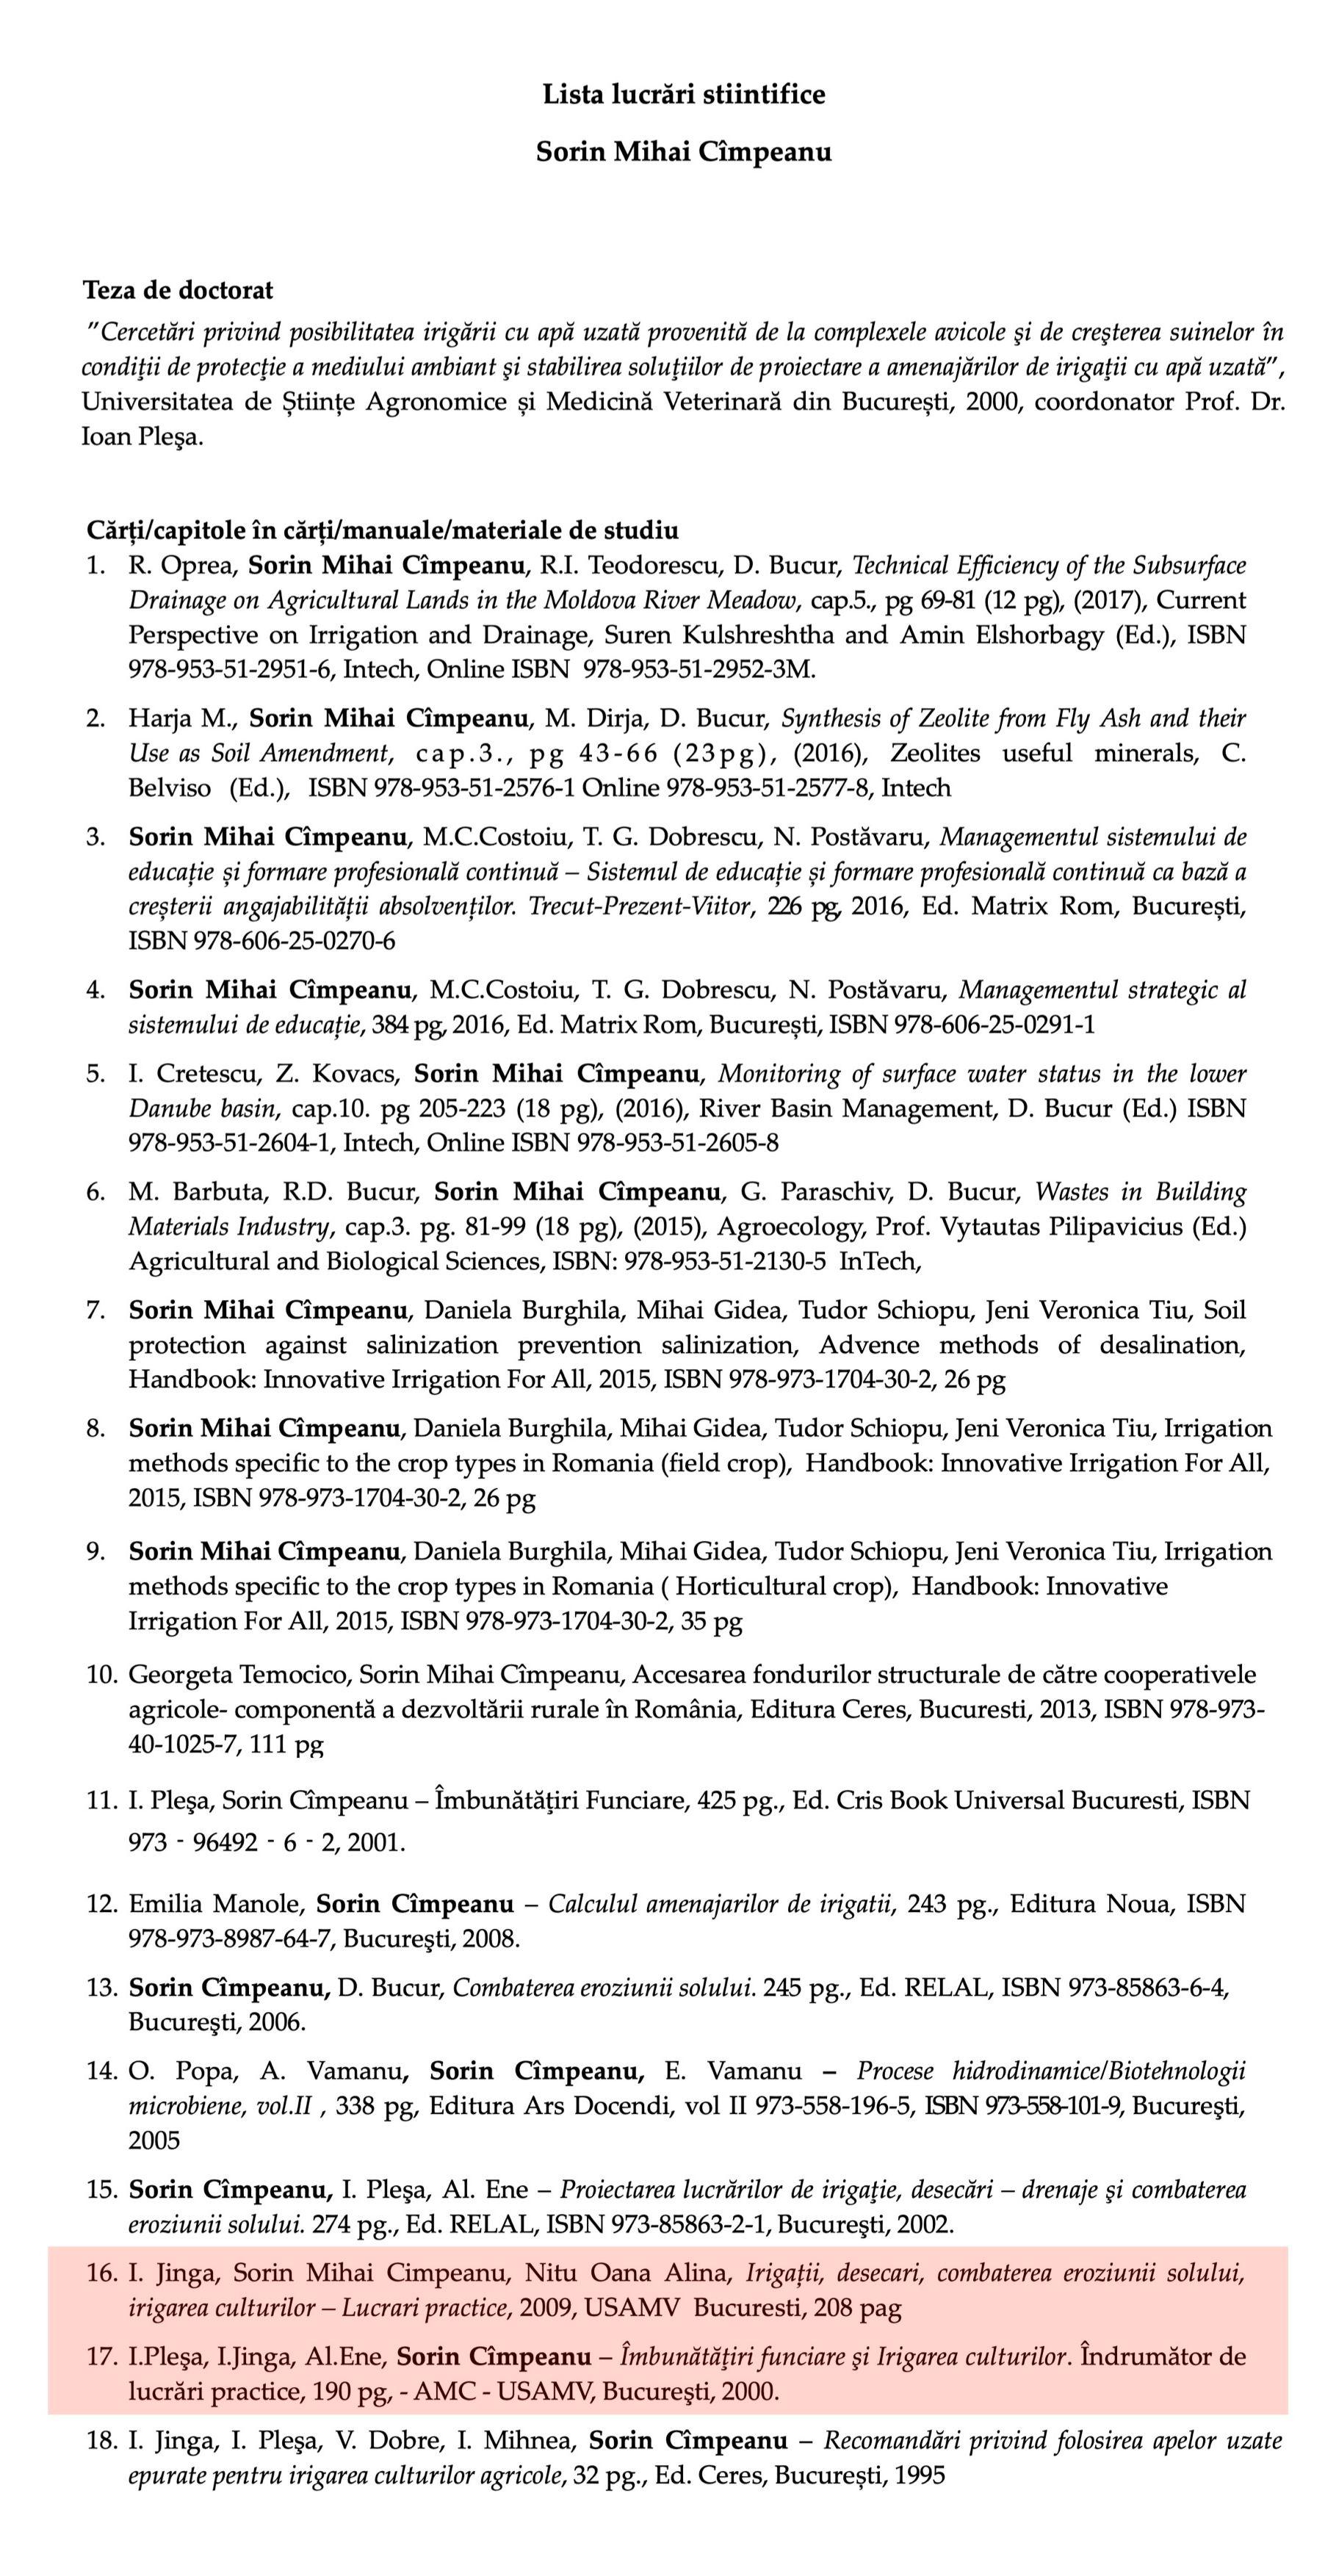 Dans la liste officielle des ouvrages scientifiques signés par Sorin Cîmpeanu, il y a le cours de 2000 dans lequel il a signé, en tant que quatrième auteur, deux chapitres, et celui de 2009, dans lequel il s’est approprié huit chapitres signés en 2000 par Ioan Pleșa et cinq autres signés, la même année, par Alexandru Ene. L’édition 2006 du cours, la première dans laquelle il a plagié les 13 chapitres, n’est pas incluse dans la liste des articles scientifiques signés par le ministre de l’Éducation. 